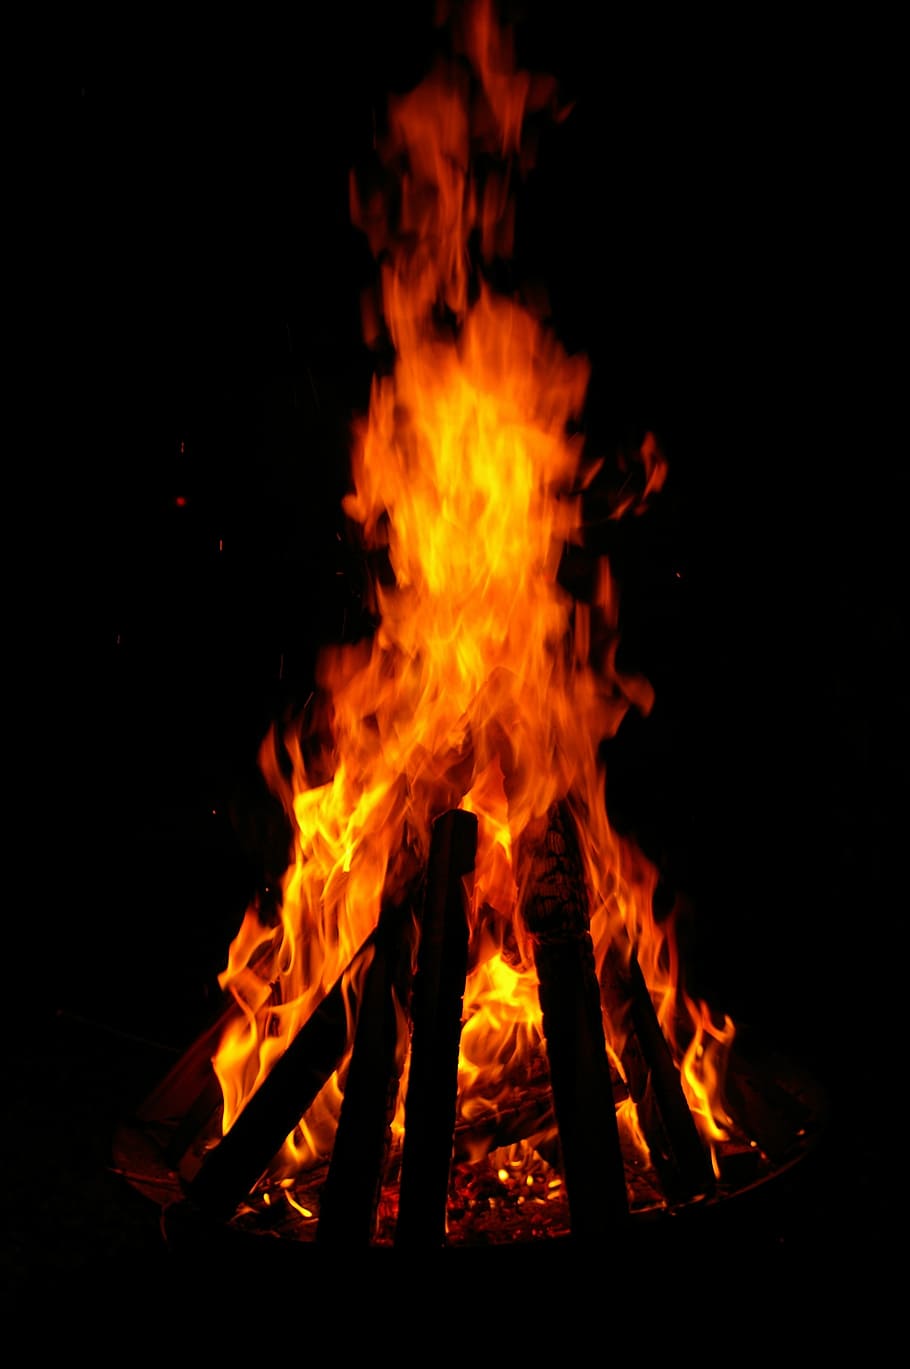 bonfire, fire bowl, fire, flame, burn, hot, blaze, garden, grill, background